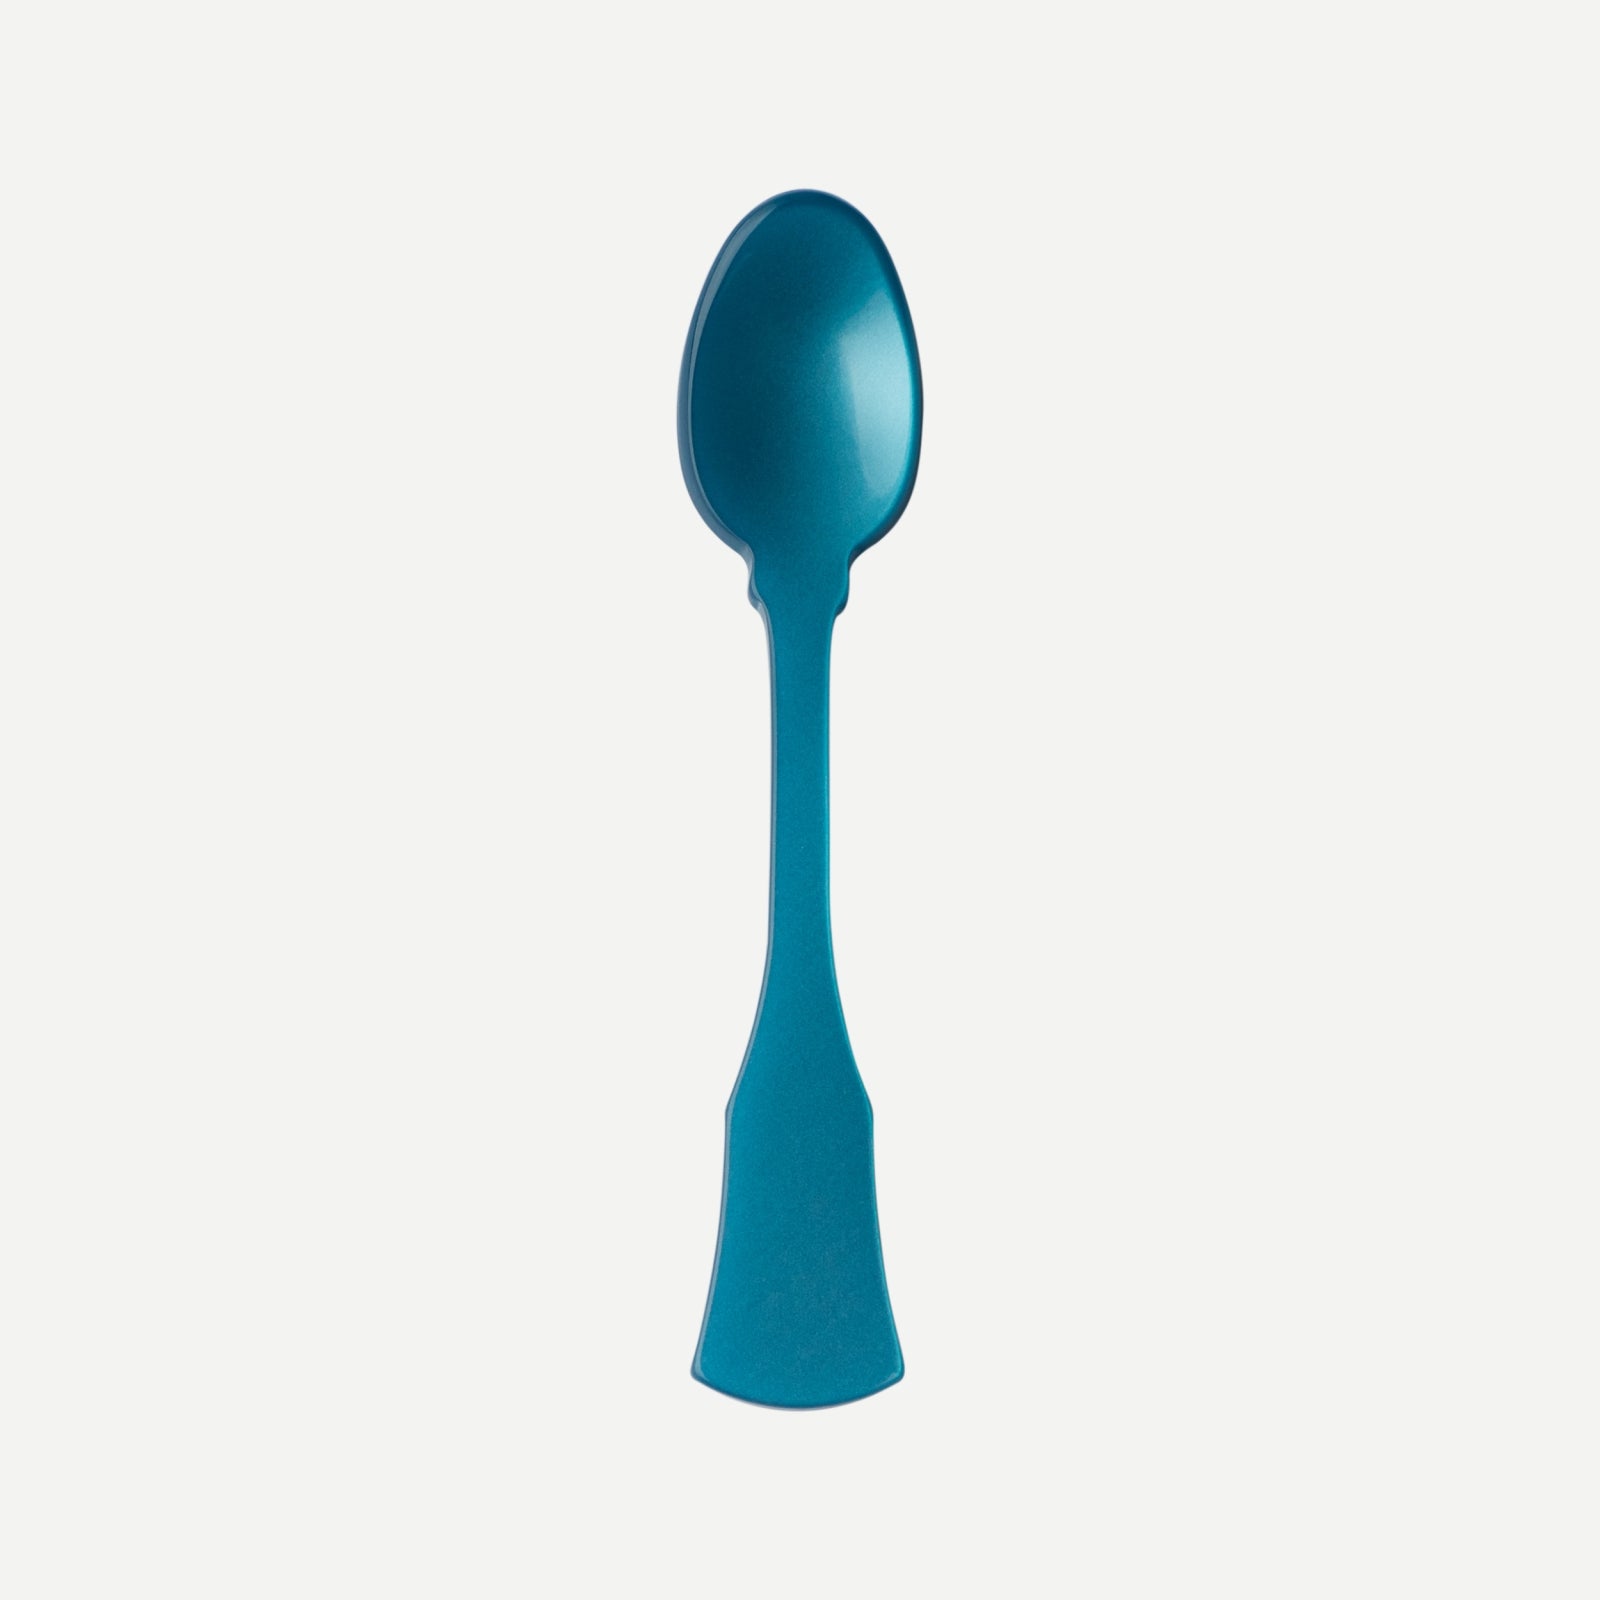 Demi-tasse spoon - HONORINE - Turquoise